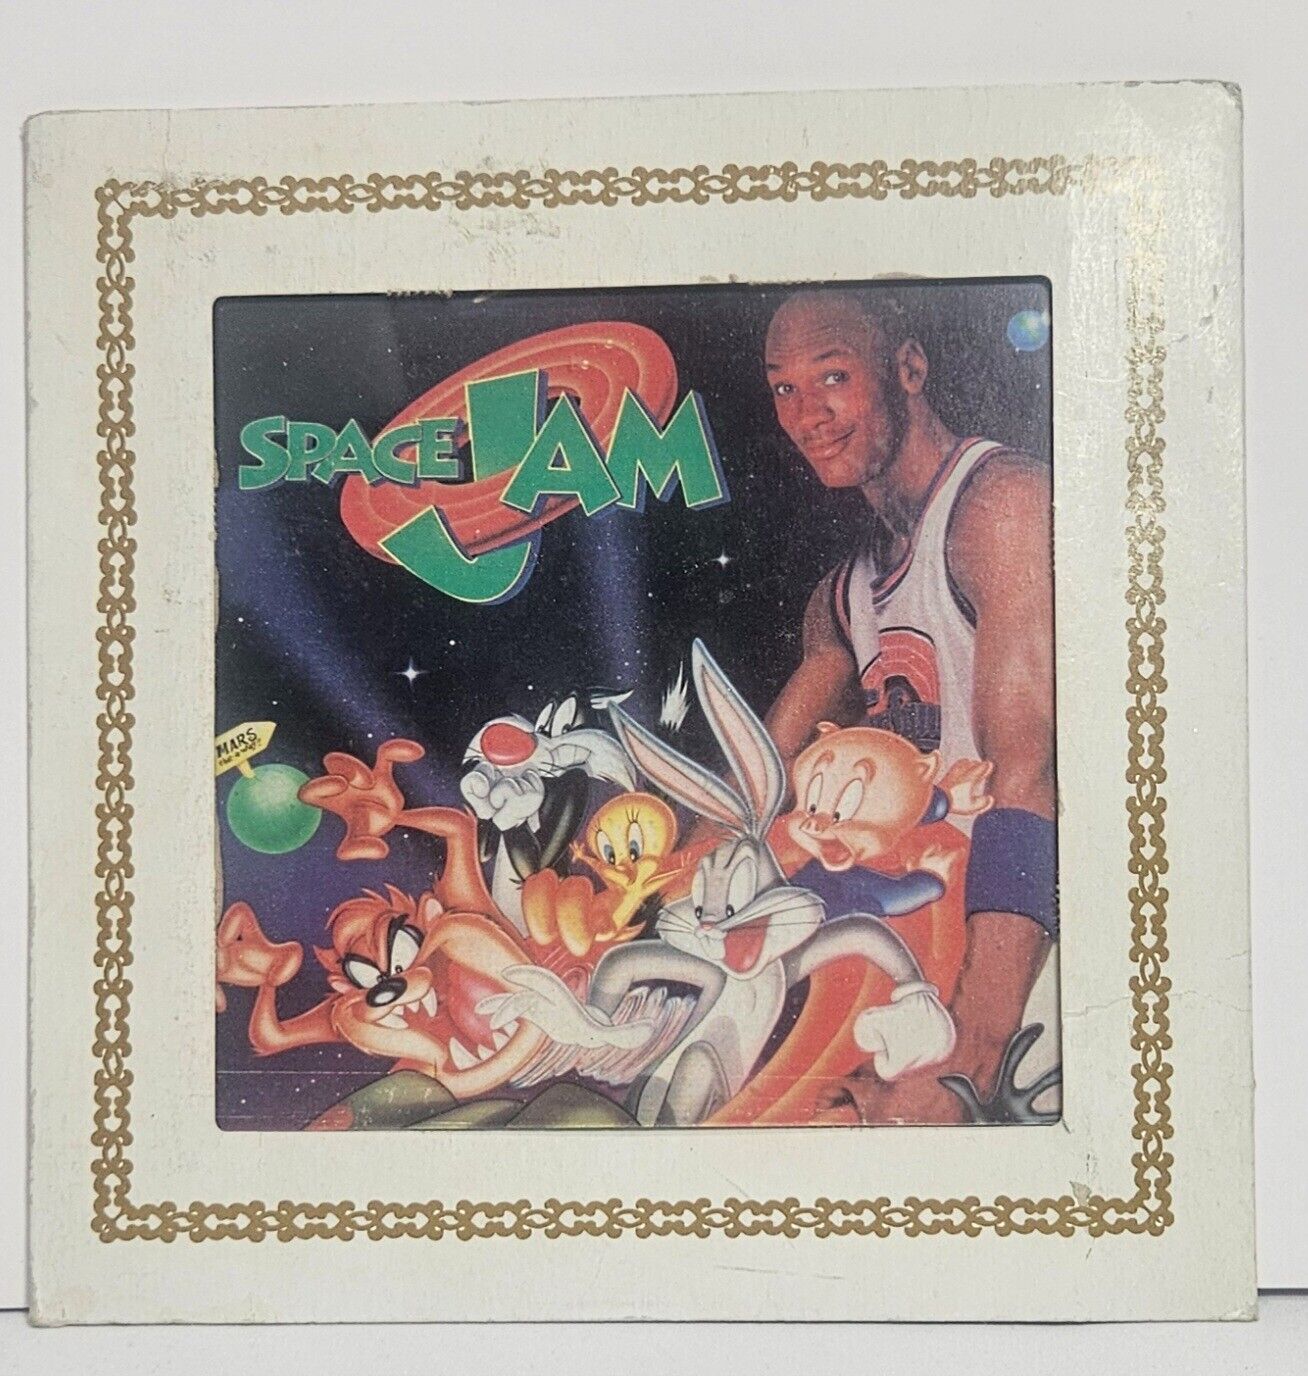 1996 Michael Jordan Space Jam Carnival Prize Cardboard Framed Photo with Glass